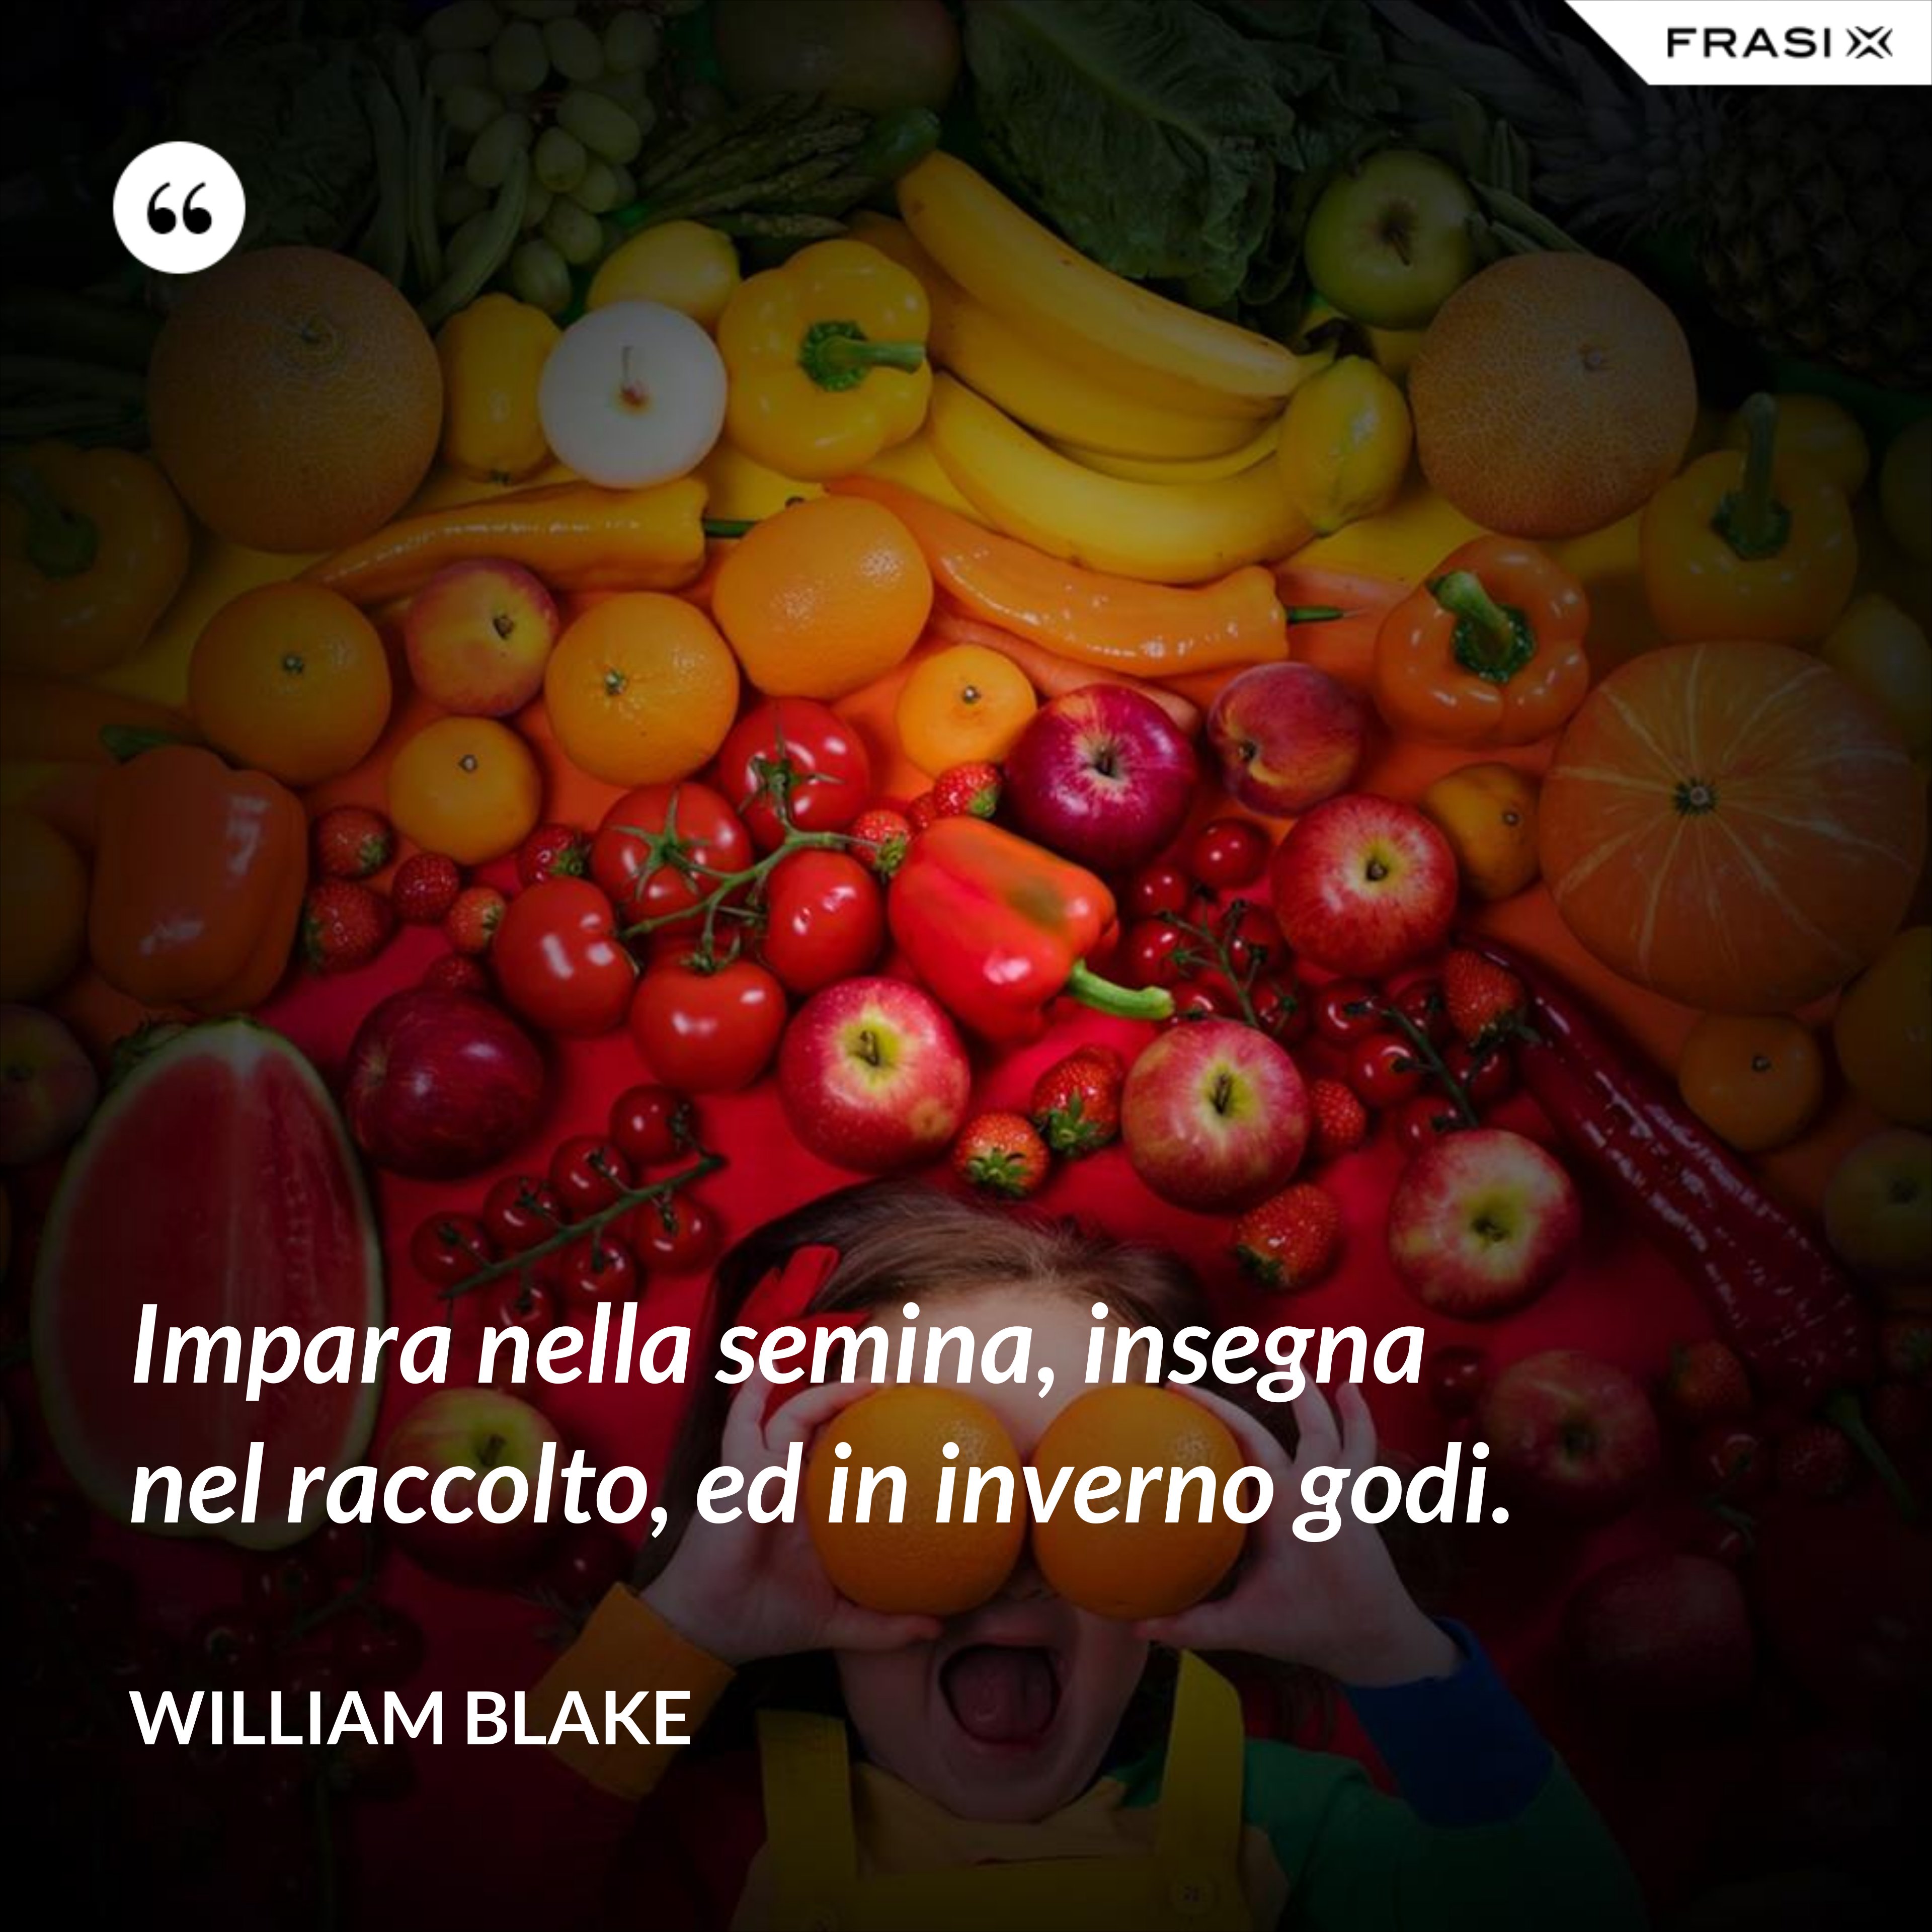 Impara nella semina, insegna nel raccolto, ed in inverno godi. - William Blake